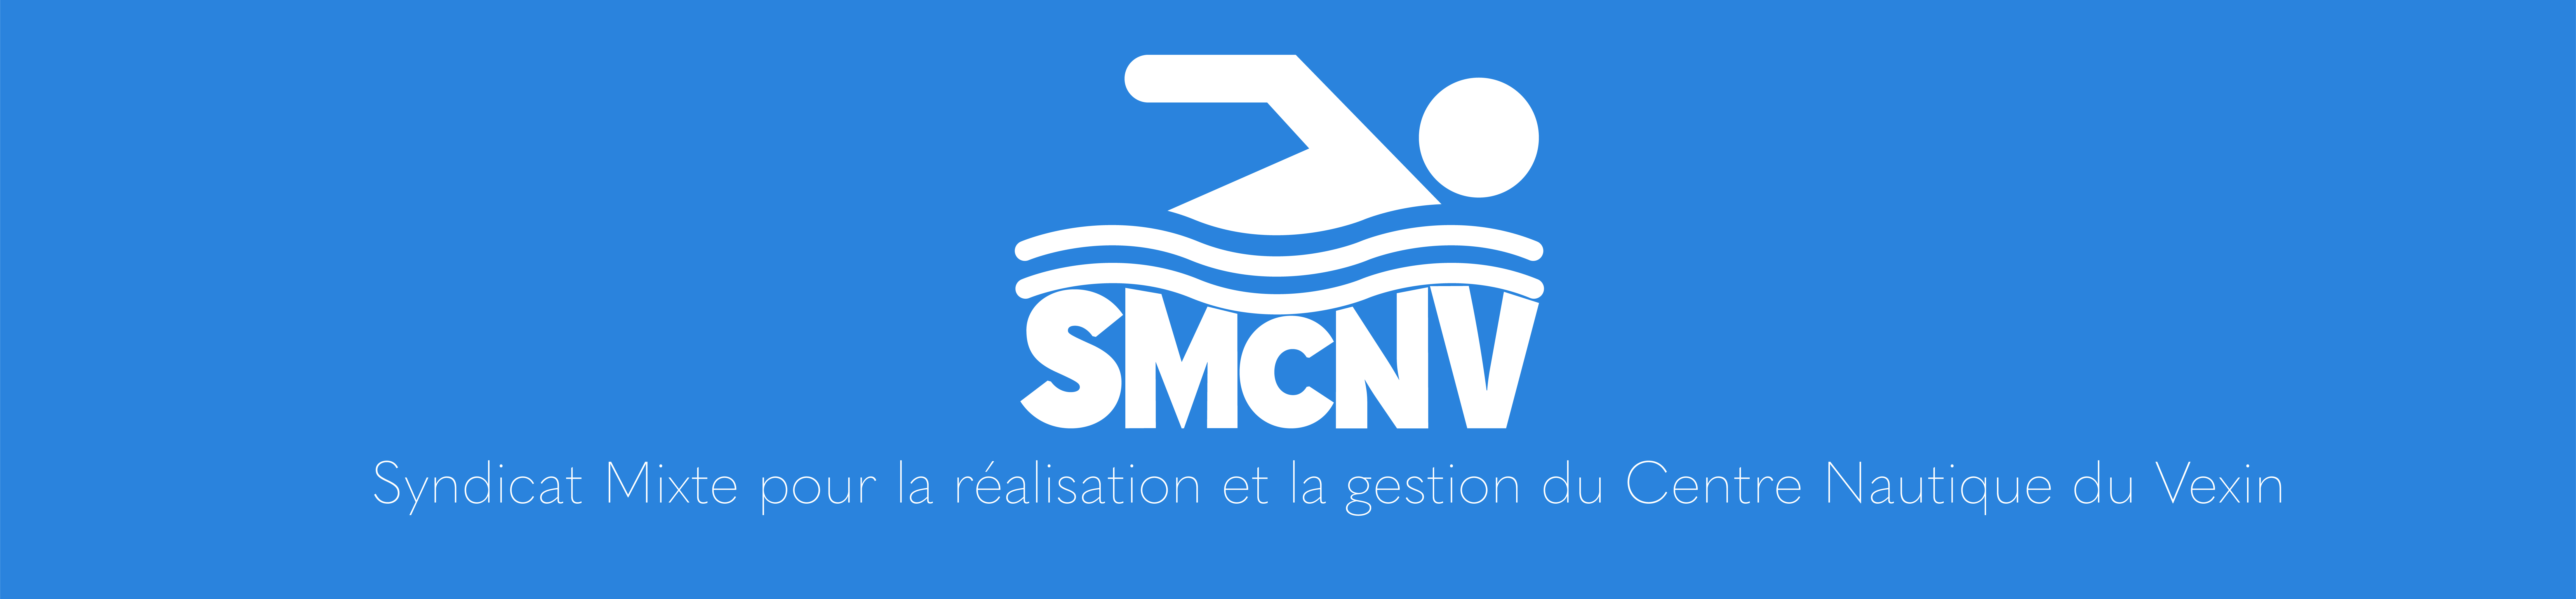 Banner SMCNV